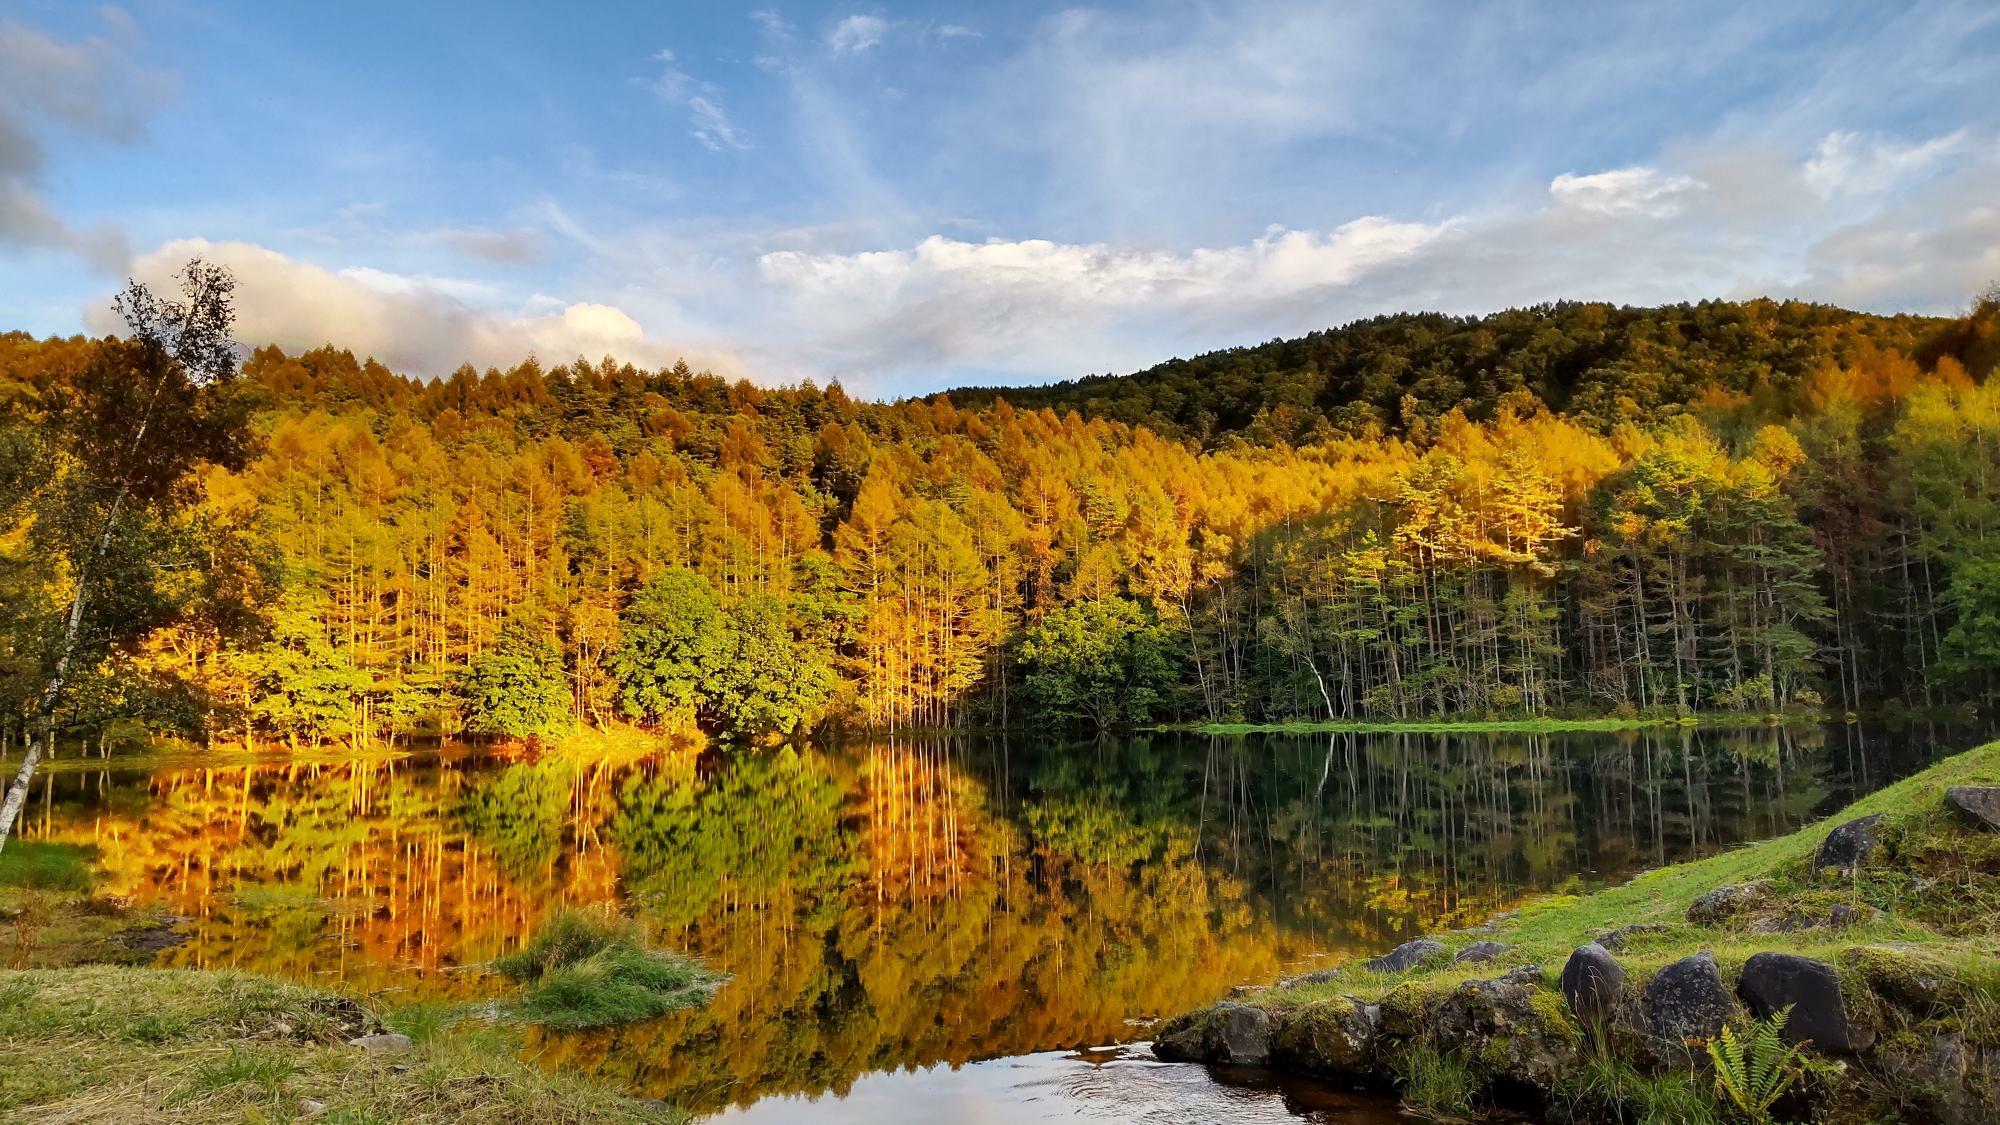 蓼科高原へツーリングした際に撮影。「湖面に映る紅葉が綺麗だったので。初夏の新緑、晩秋の紅葉などの風景が好きです」（本人提供）